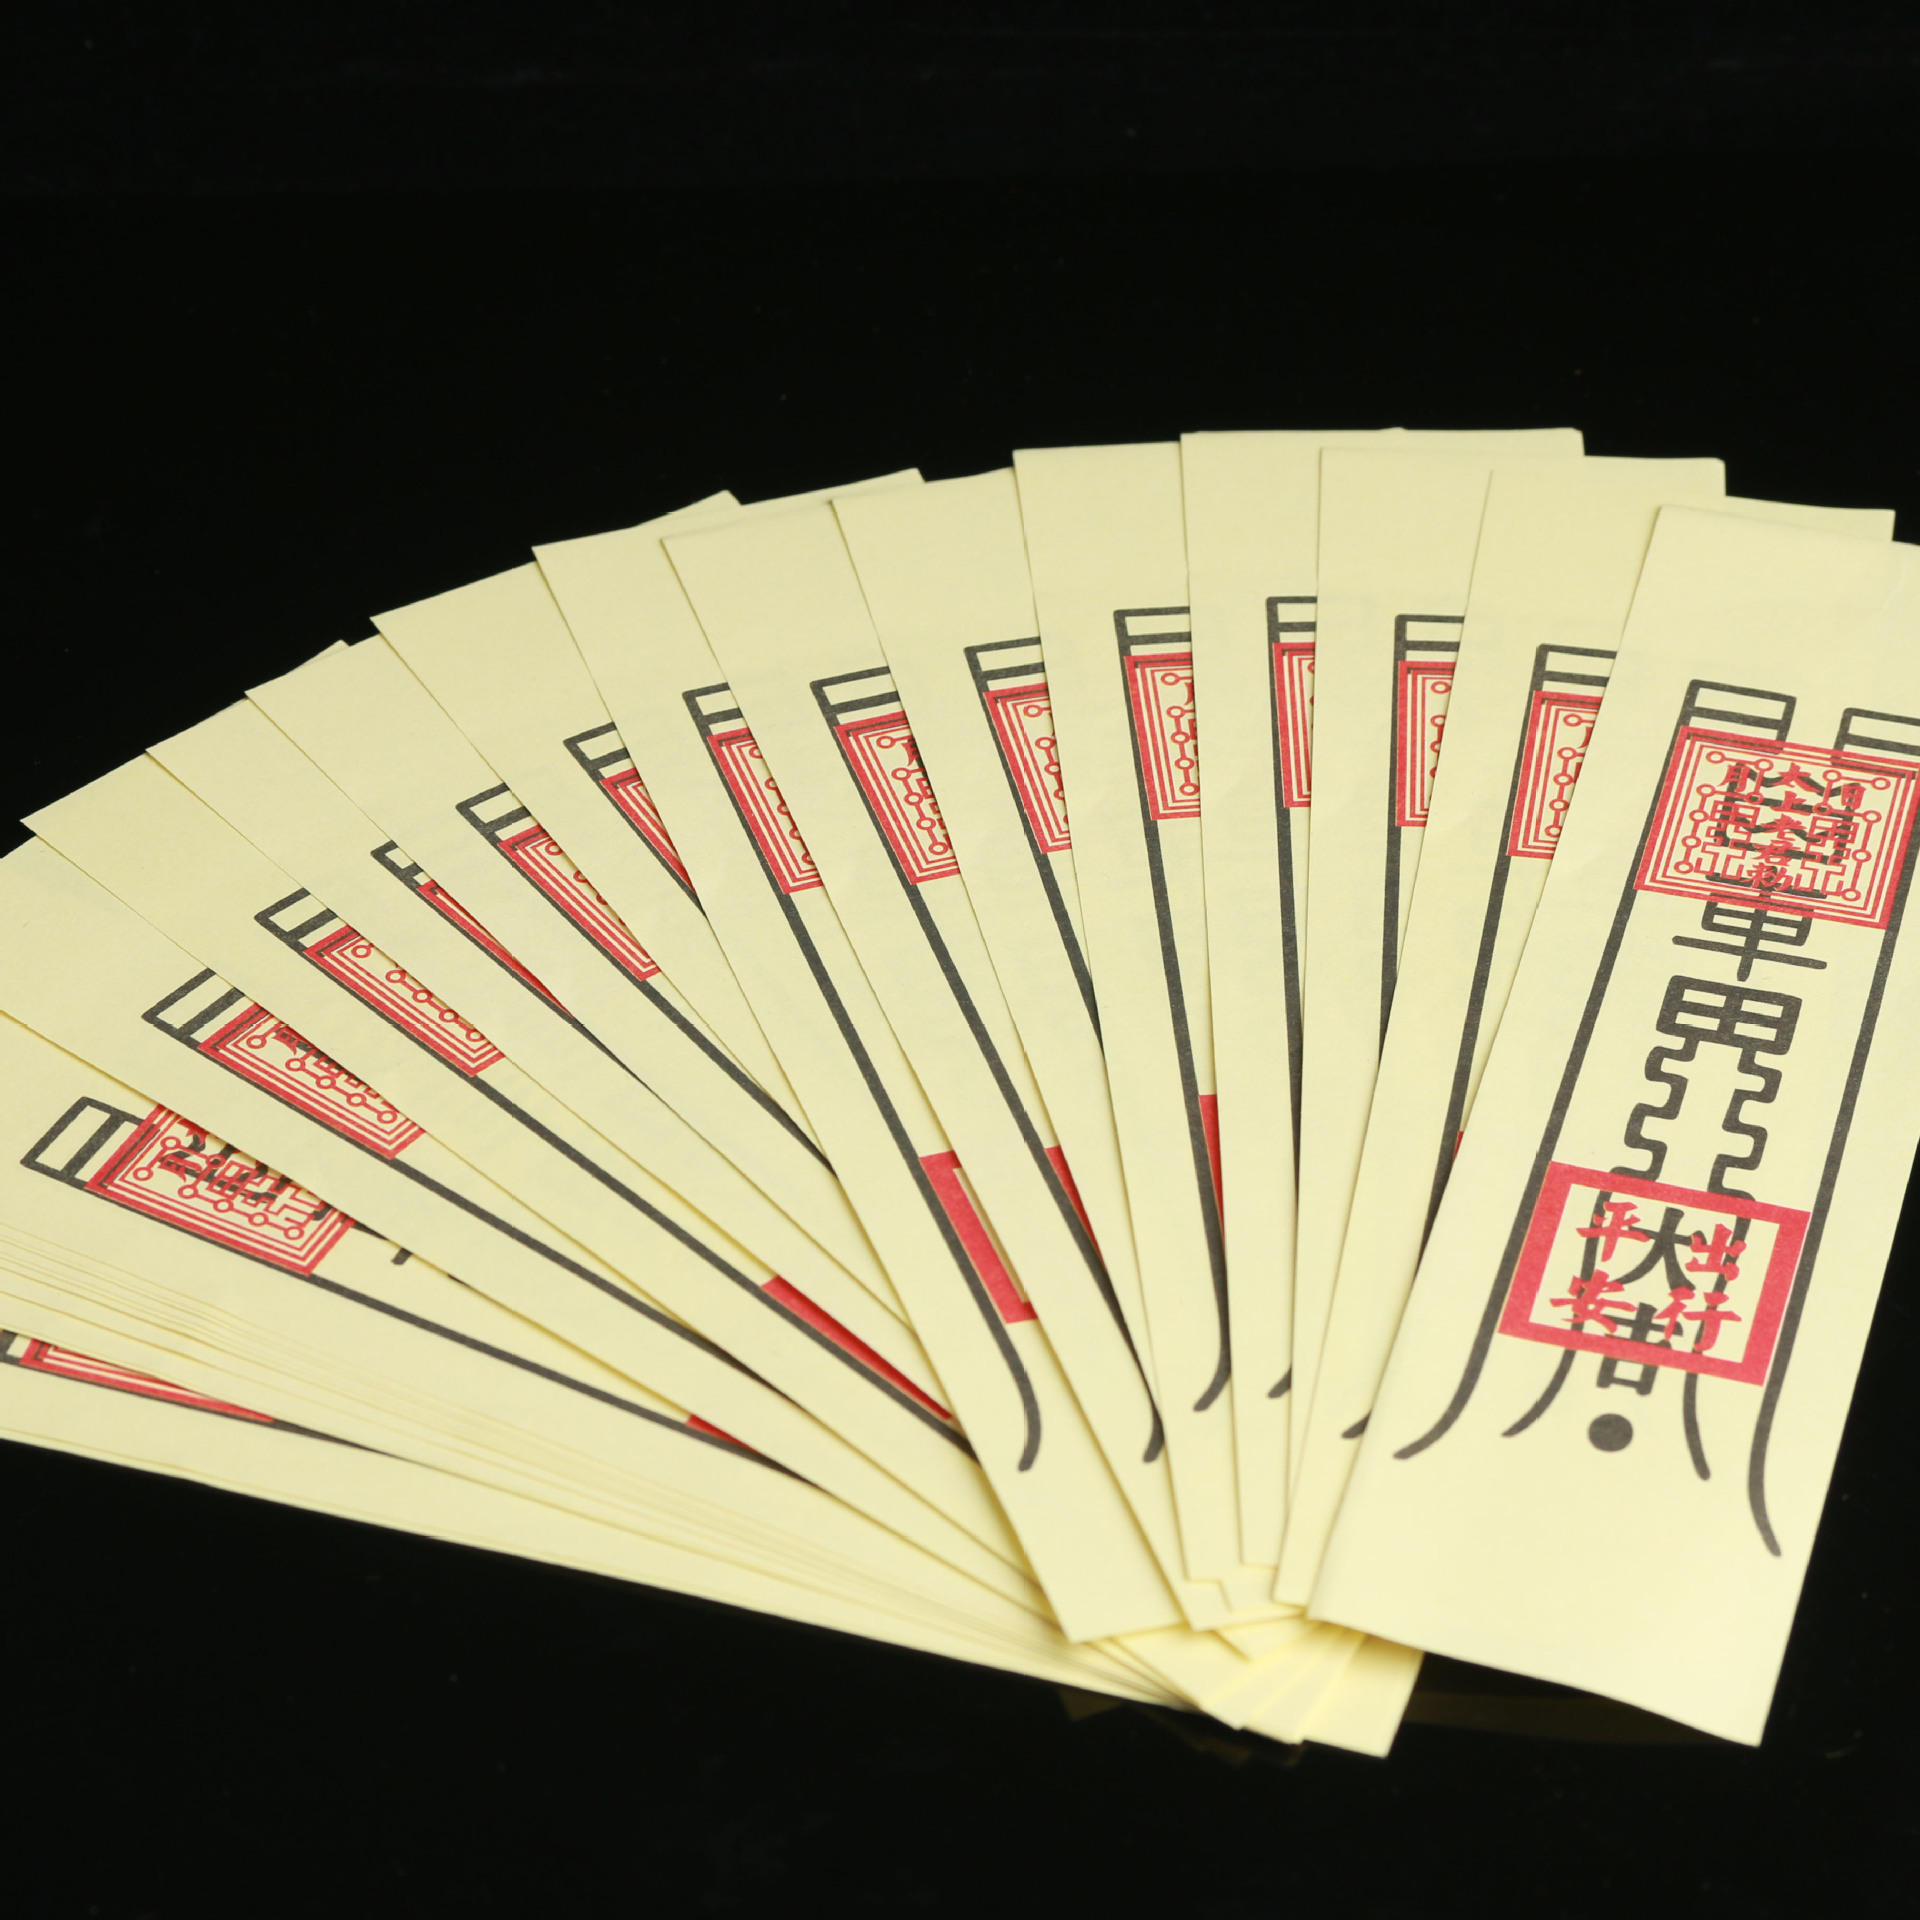 春节符纸格式图片